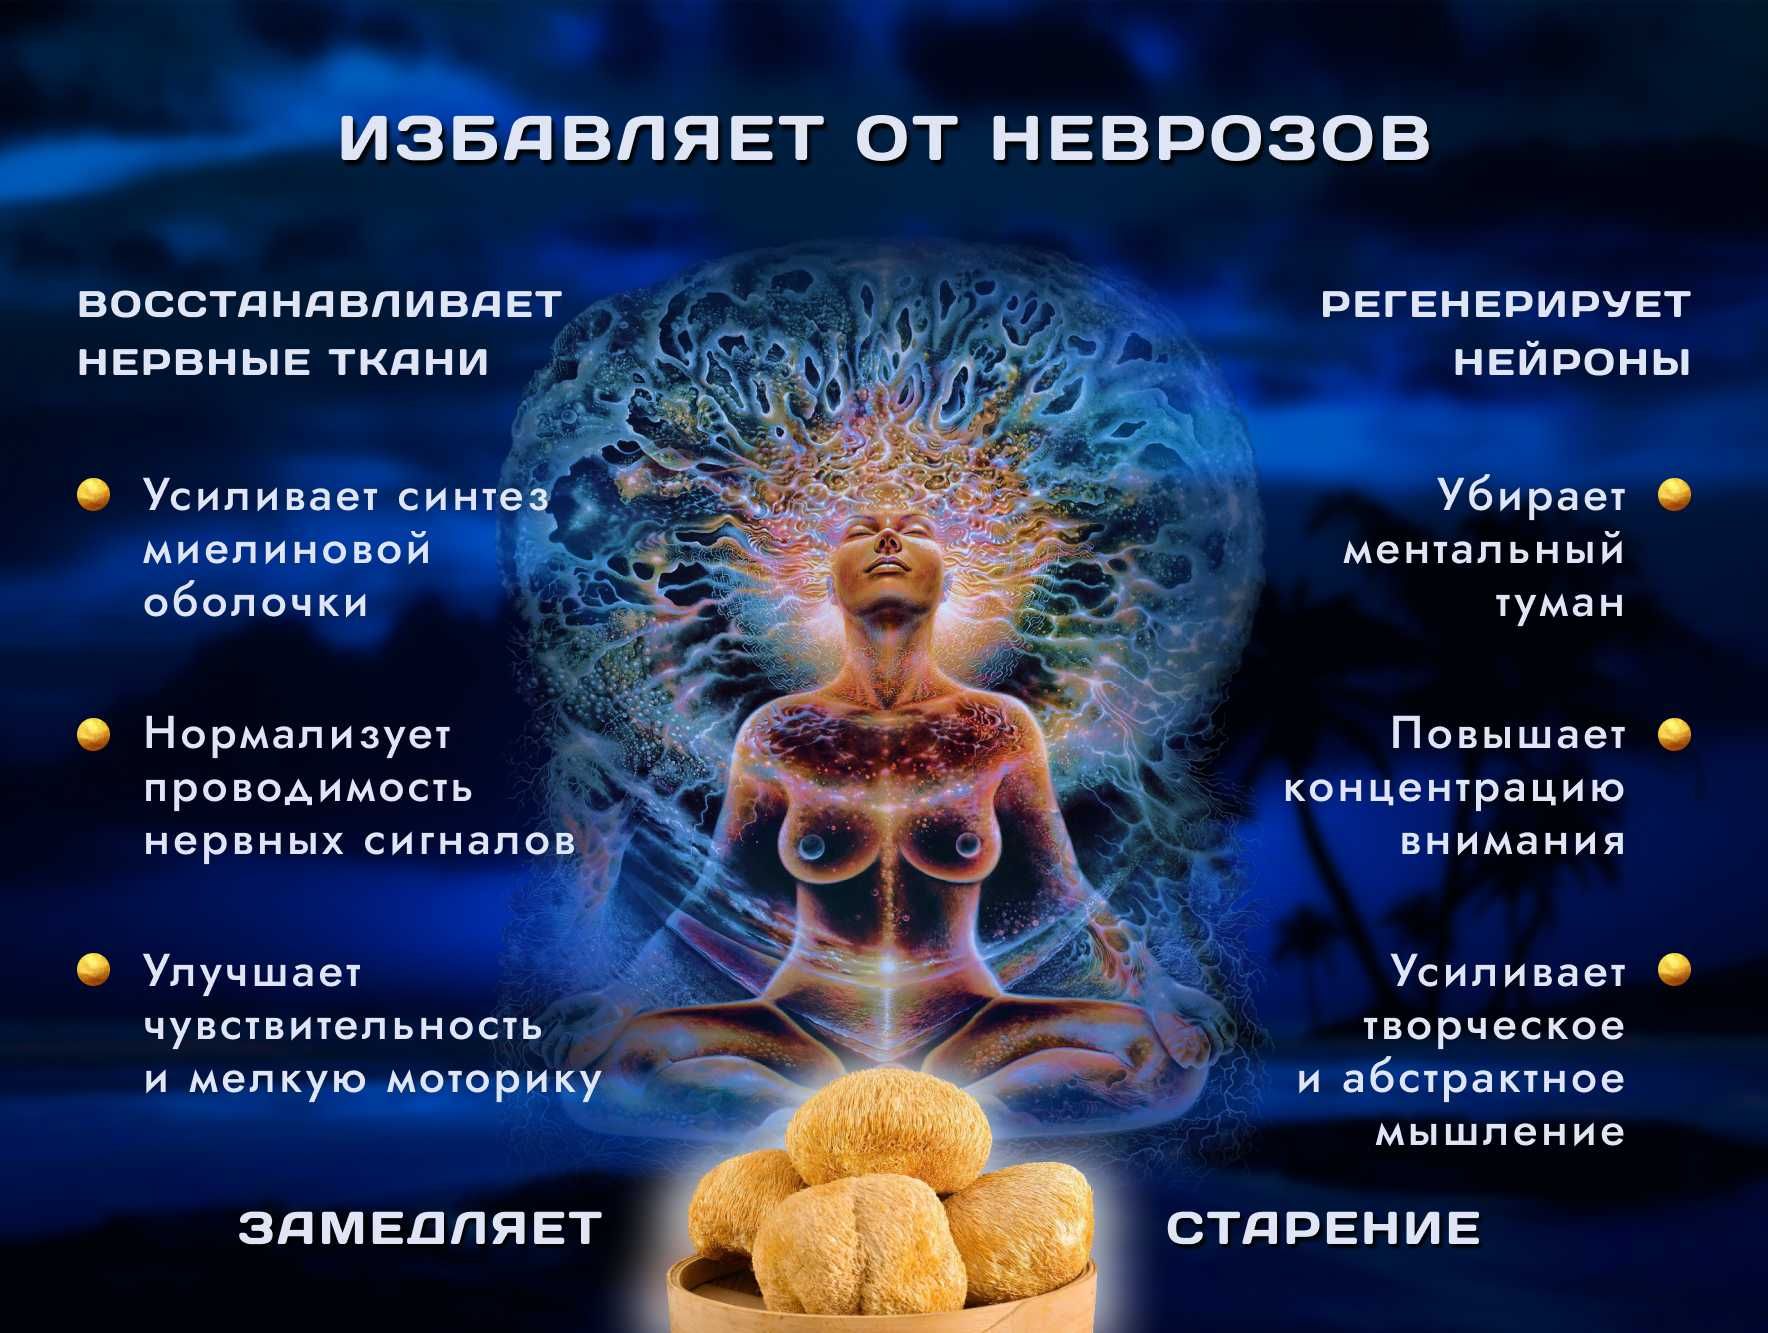 Купите сушенные плоды гриба ЕЖОВИК ГРЕБЕНЧАТЫЙ 》Выращен в Украине